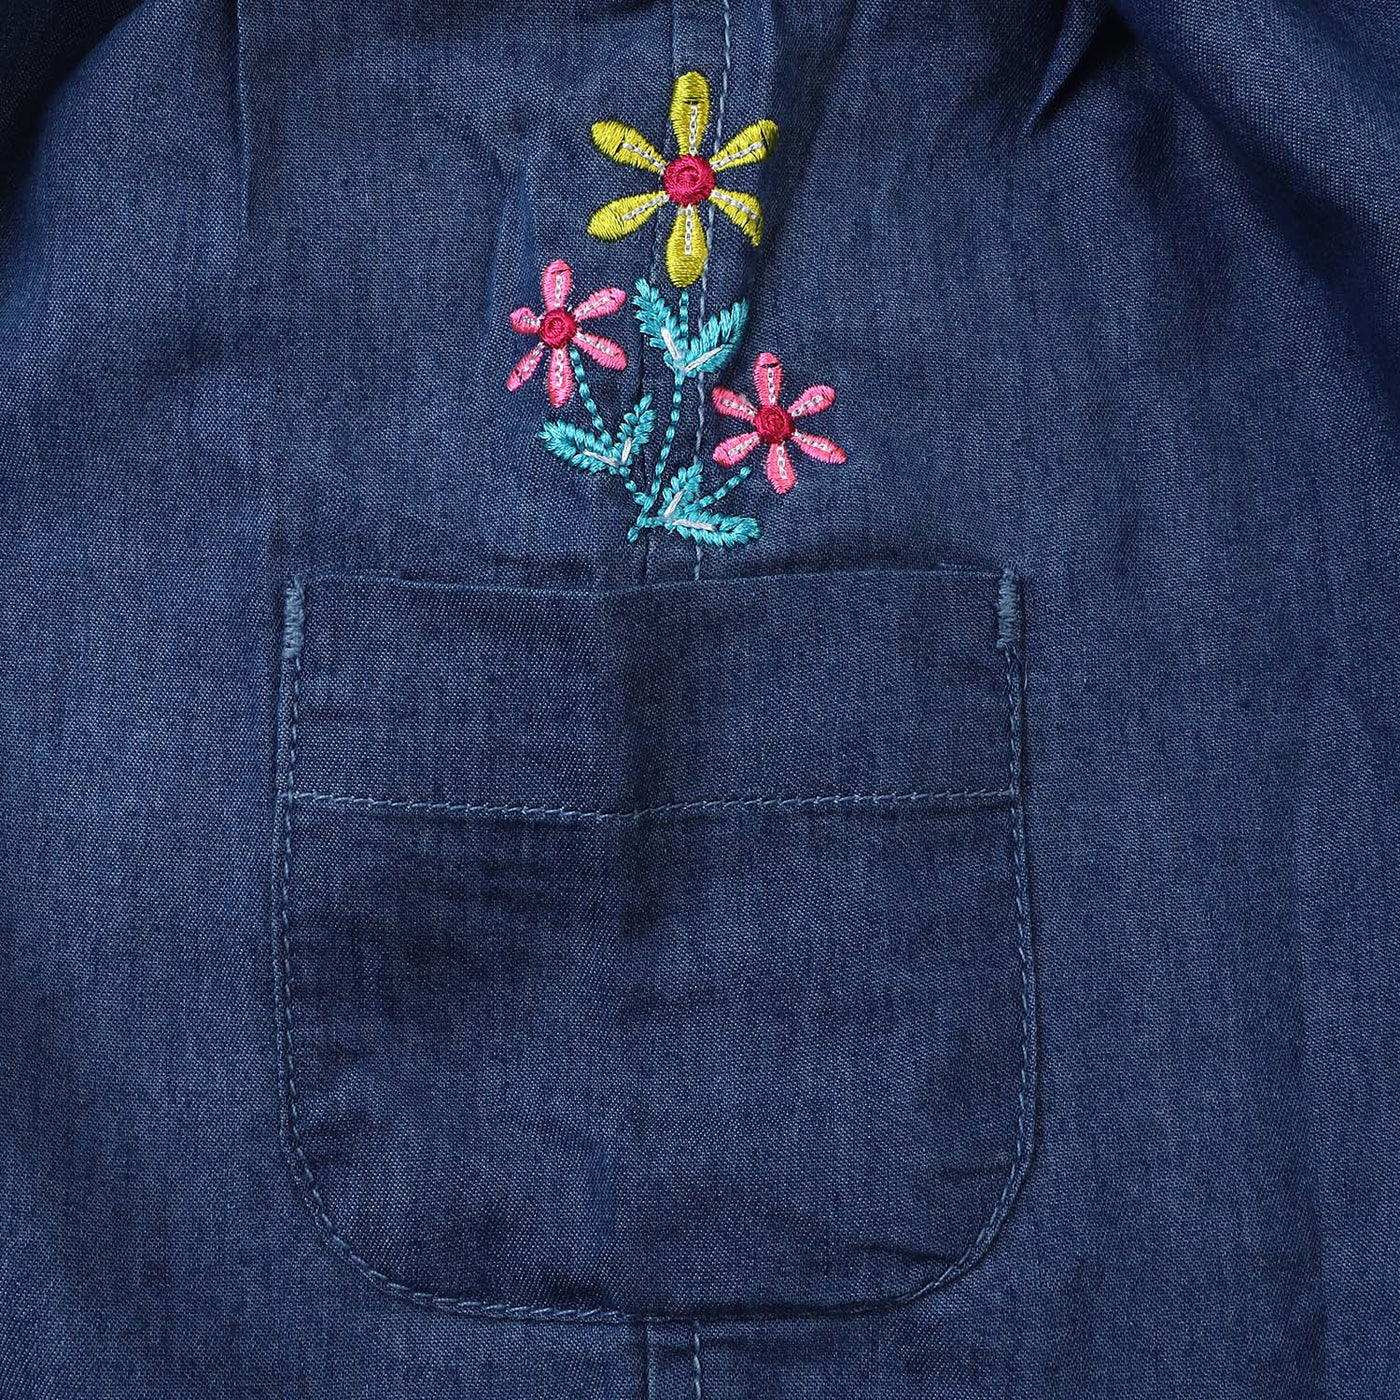 Girls Denim Skirt Pocket EMB Flower - LIGHT BLUE